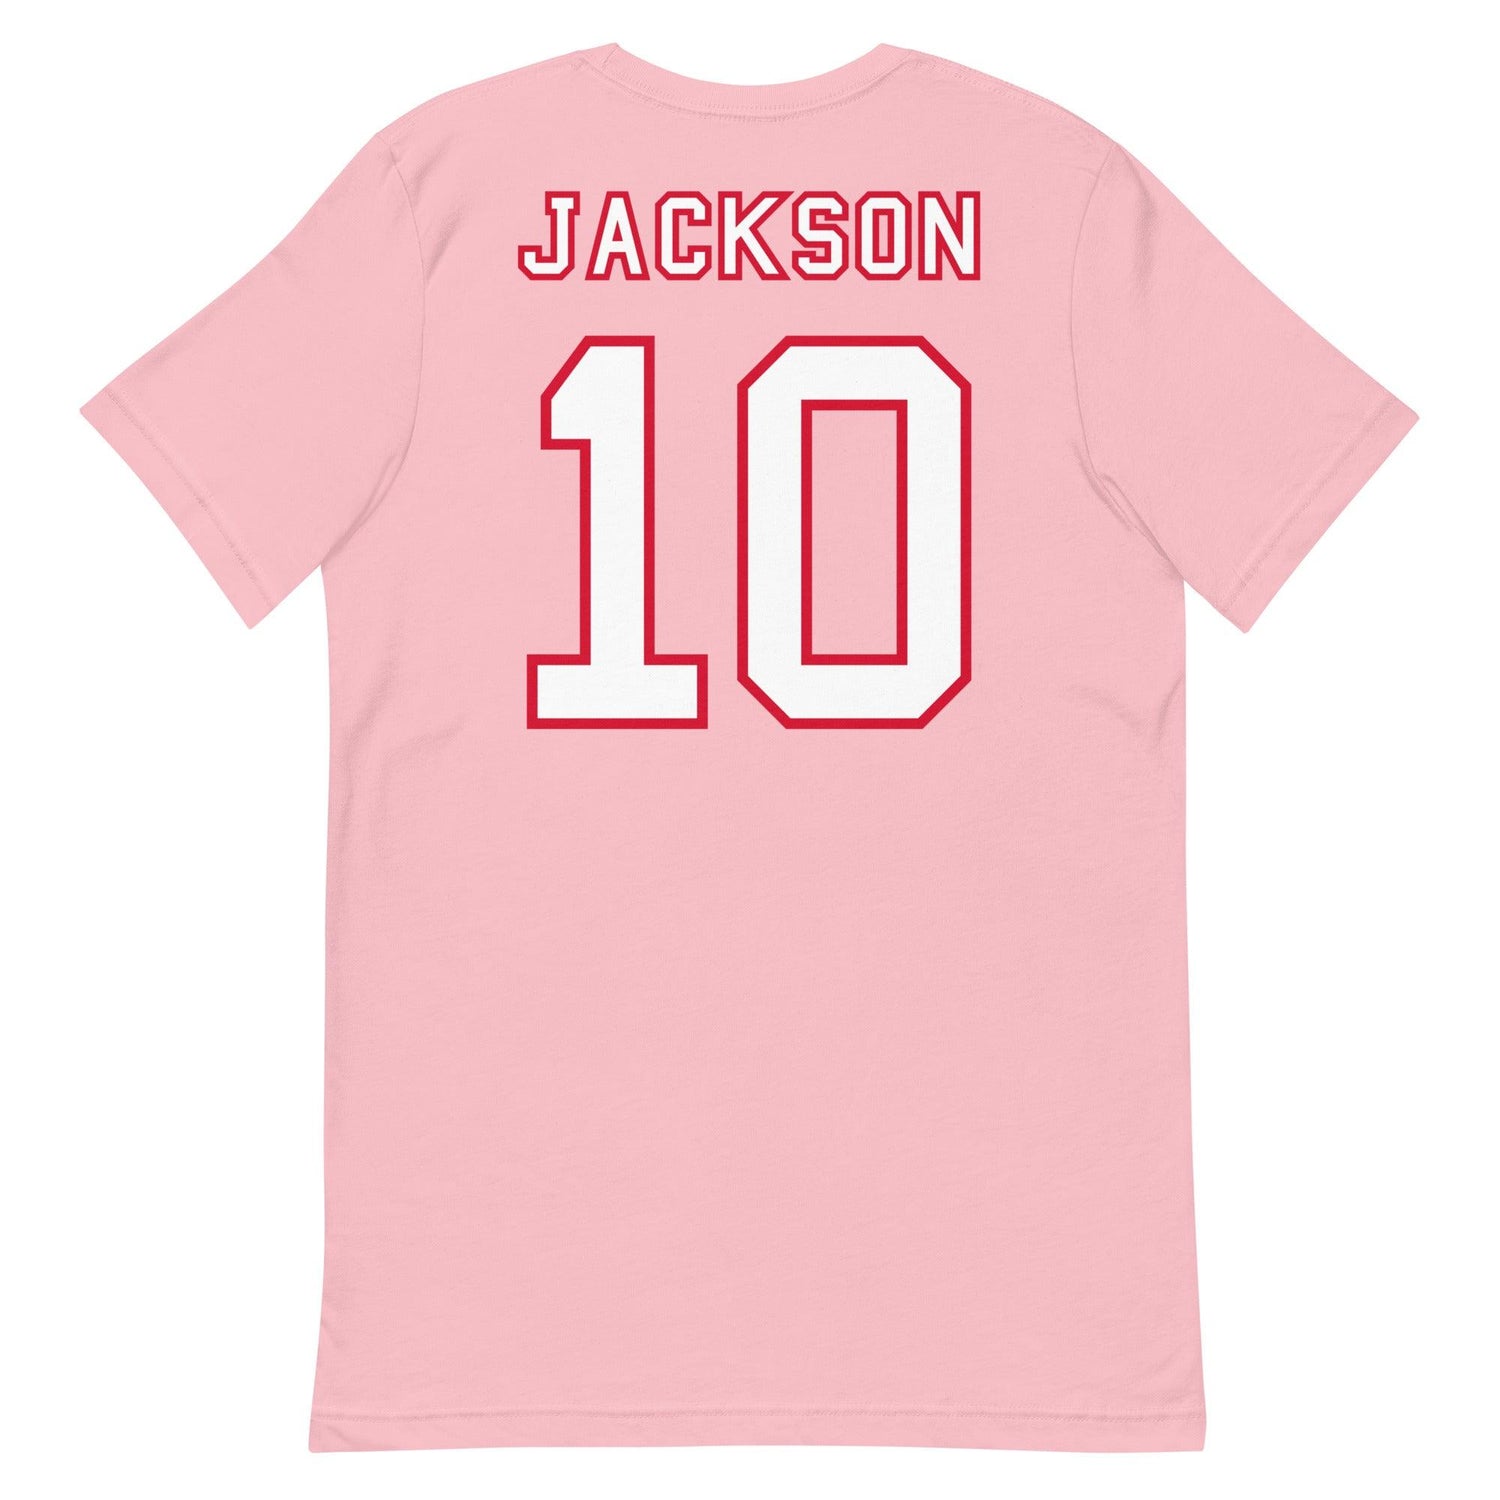 Kearis Jackson "Jersey" t-shirt - Fan Arch